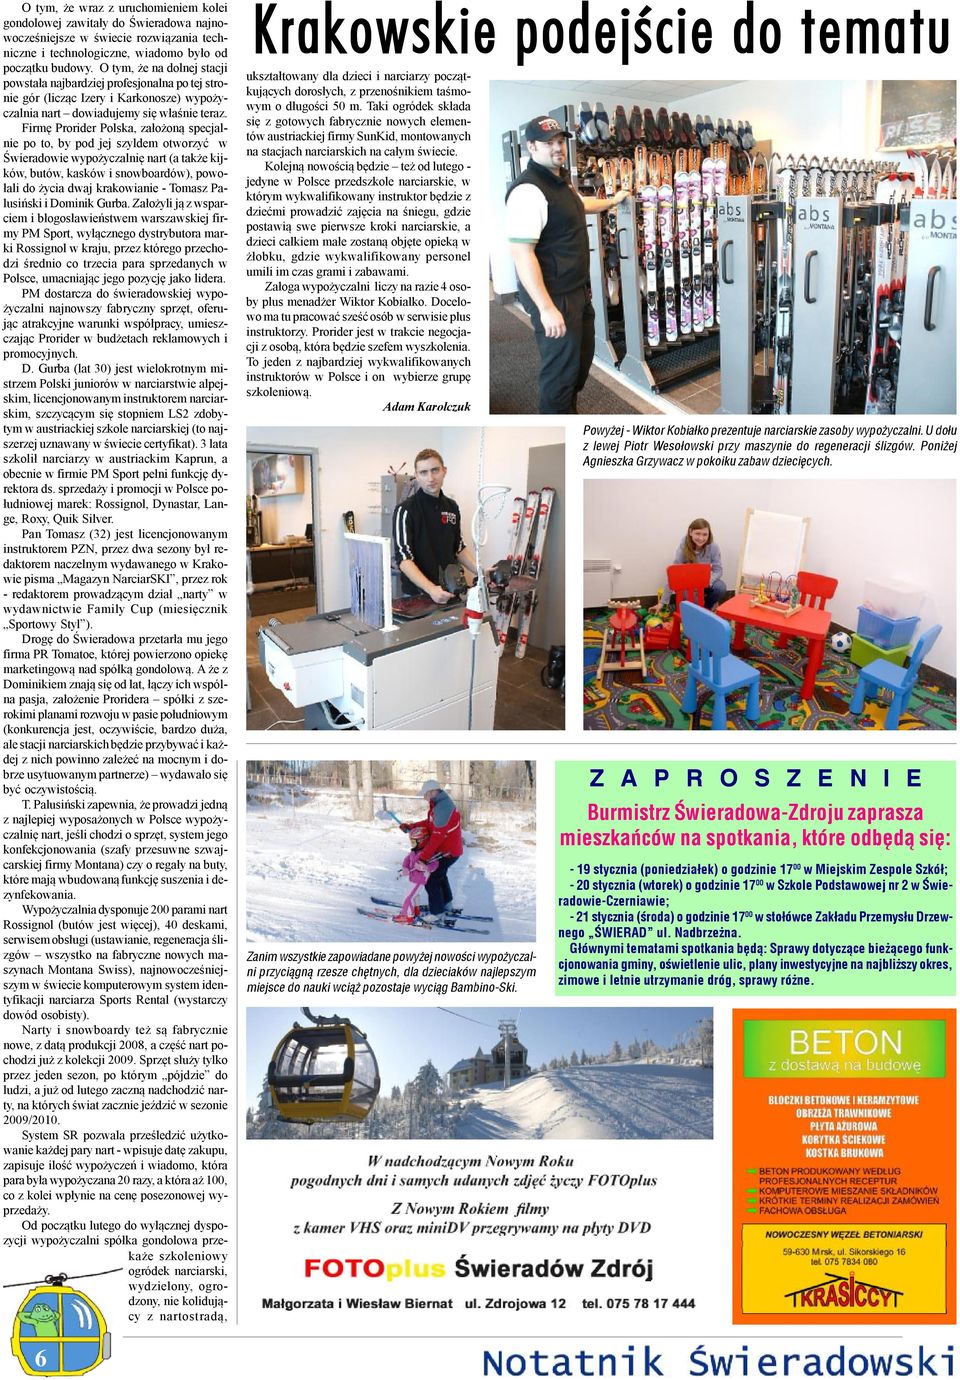 Firmę Prorider Polska, założoną specjalnie po to, by pod jej szyldem otworzyć w Świeradowie wypożyczalnię nart (a także kijków, butów, kasków i snowboardów), powołali do życia dwaj krakowianie -